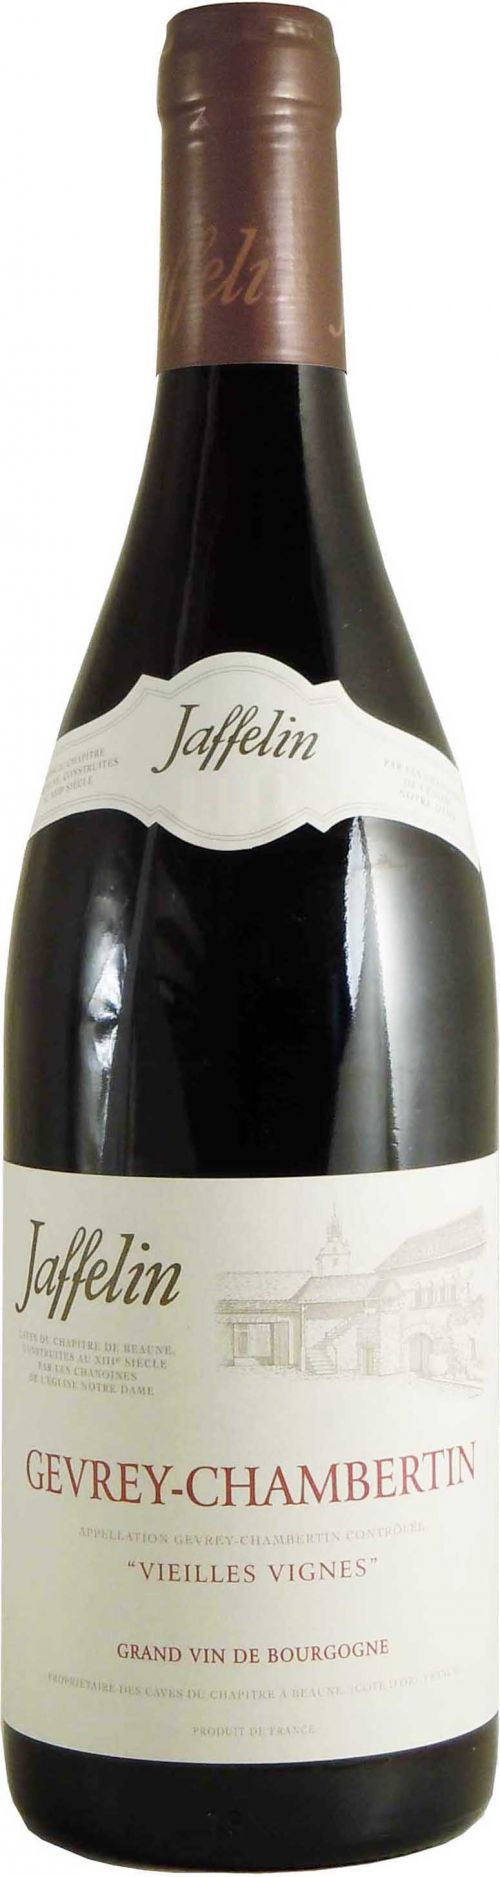 Gevrey-Chambertin Vieilles Vignes, Maison Jaffelin